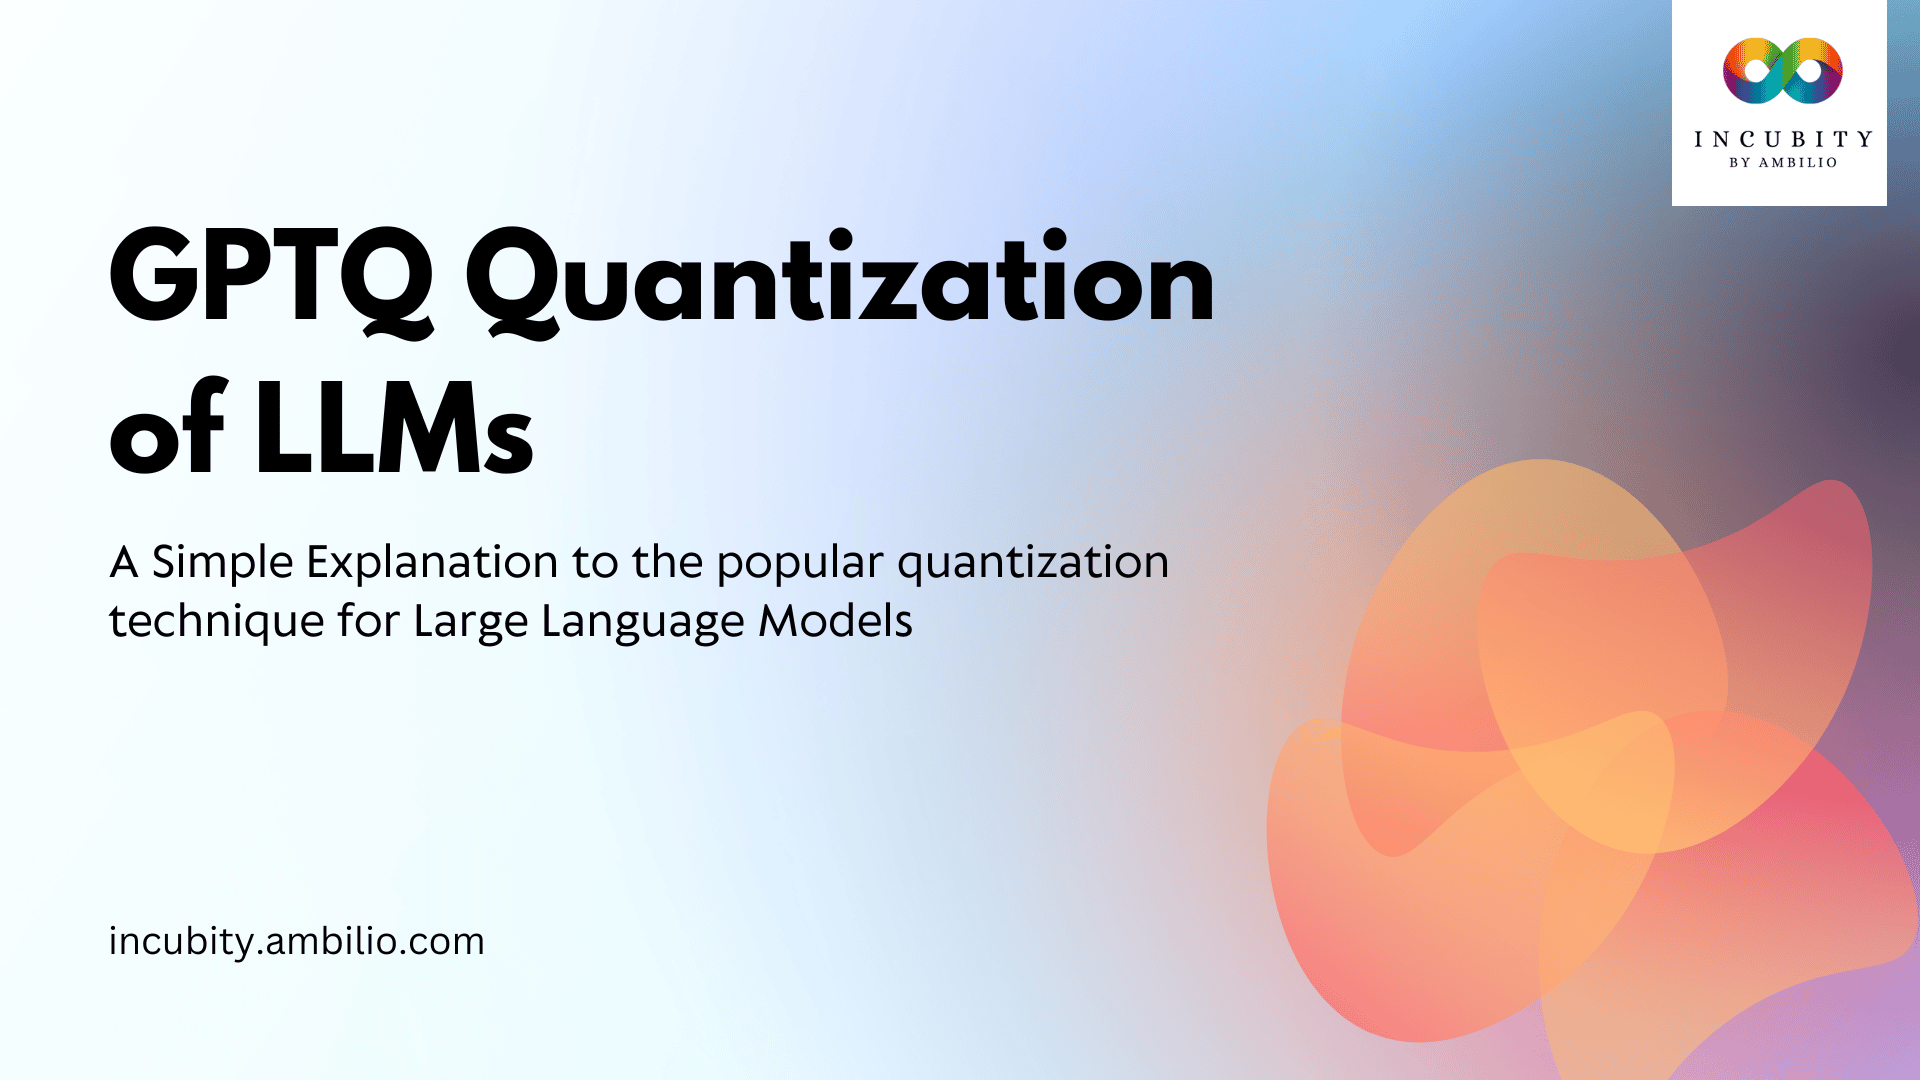 GPTQ Quantization of LLMs